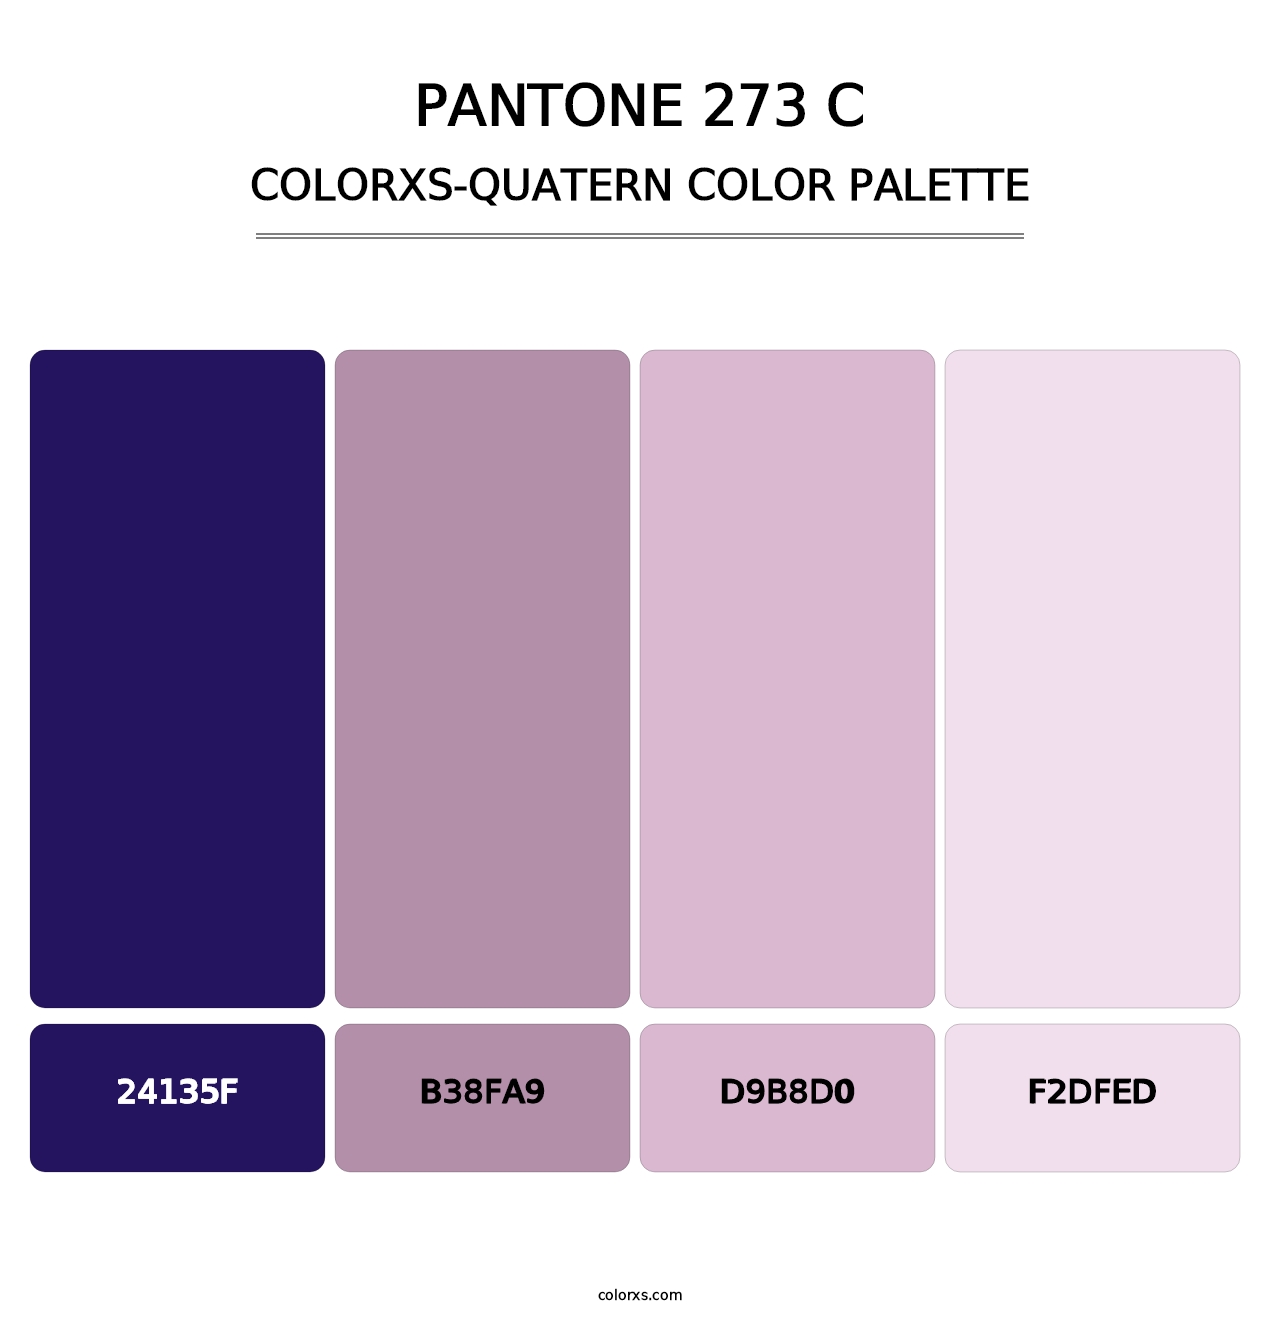 PANTONE 273 C - Colorxs Quatern Palette